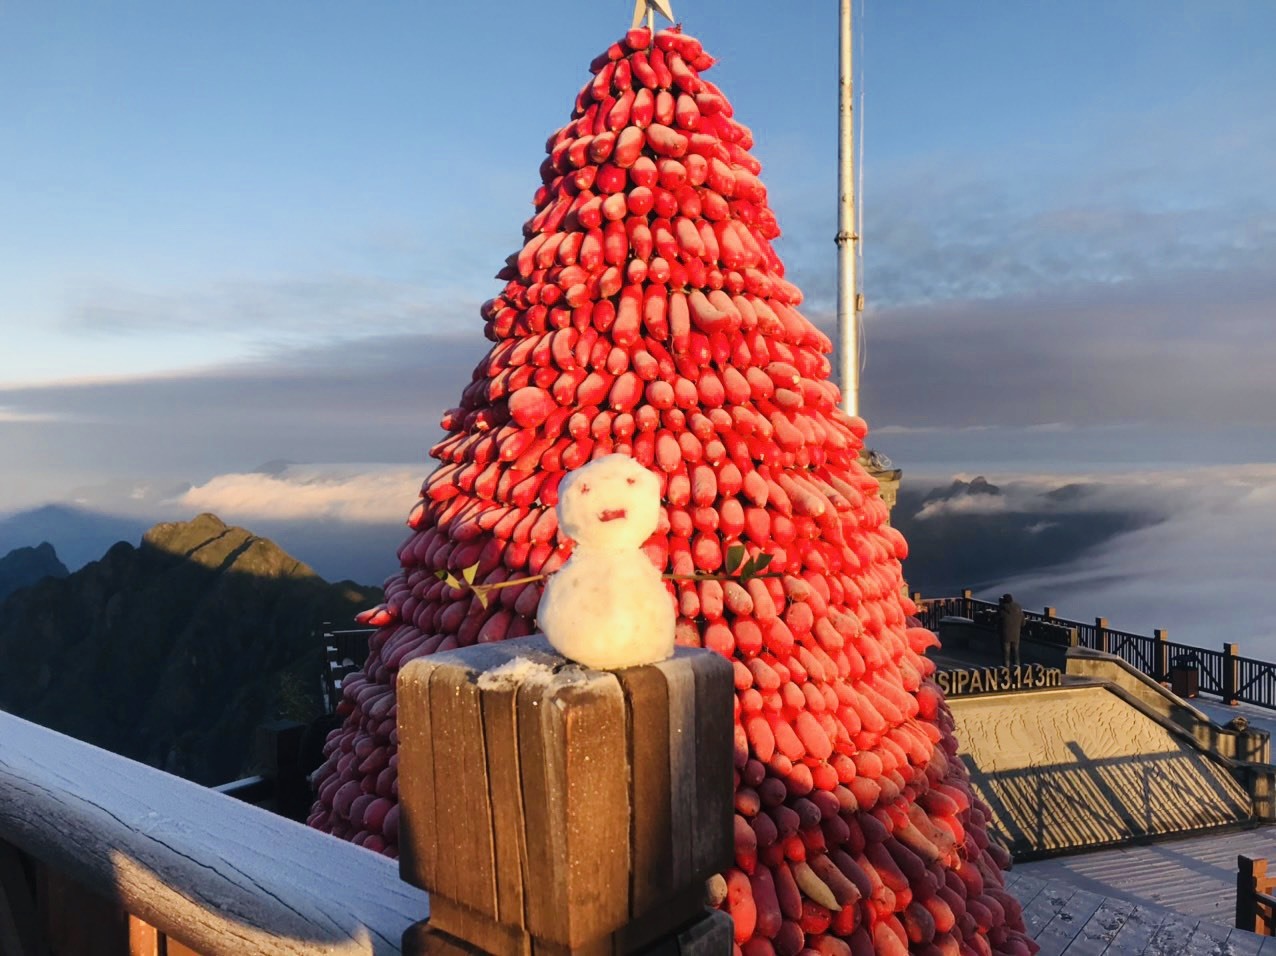 Du khách tới đỉnh Fansipan săn băng tuyết dịp này còn có thể tận hưởng không khí Giáng sinh và chào đón năm mới 2022 tại khu du lịch Sun World Fansipan Legend. Nổi bật là cây thông Giáng sinh khổng lồ làm từ 1,5 tấn củ cải đỏ – đặc sản Sa Pa.